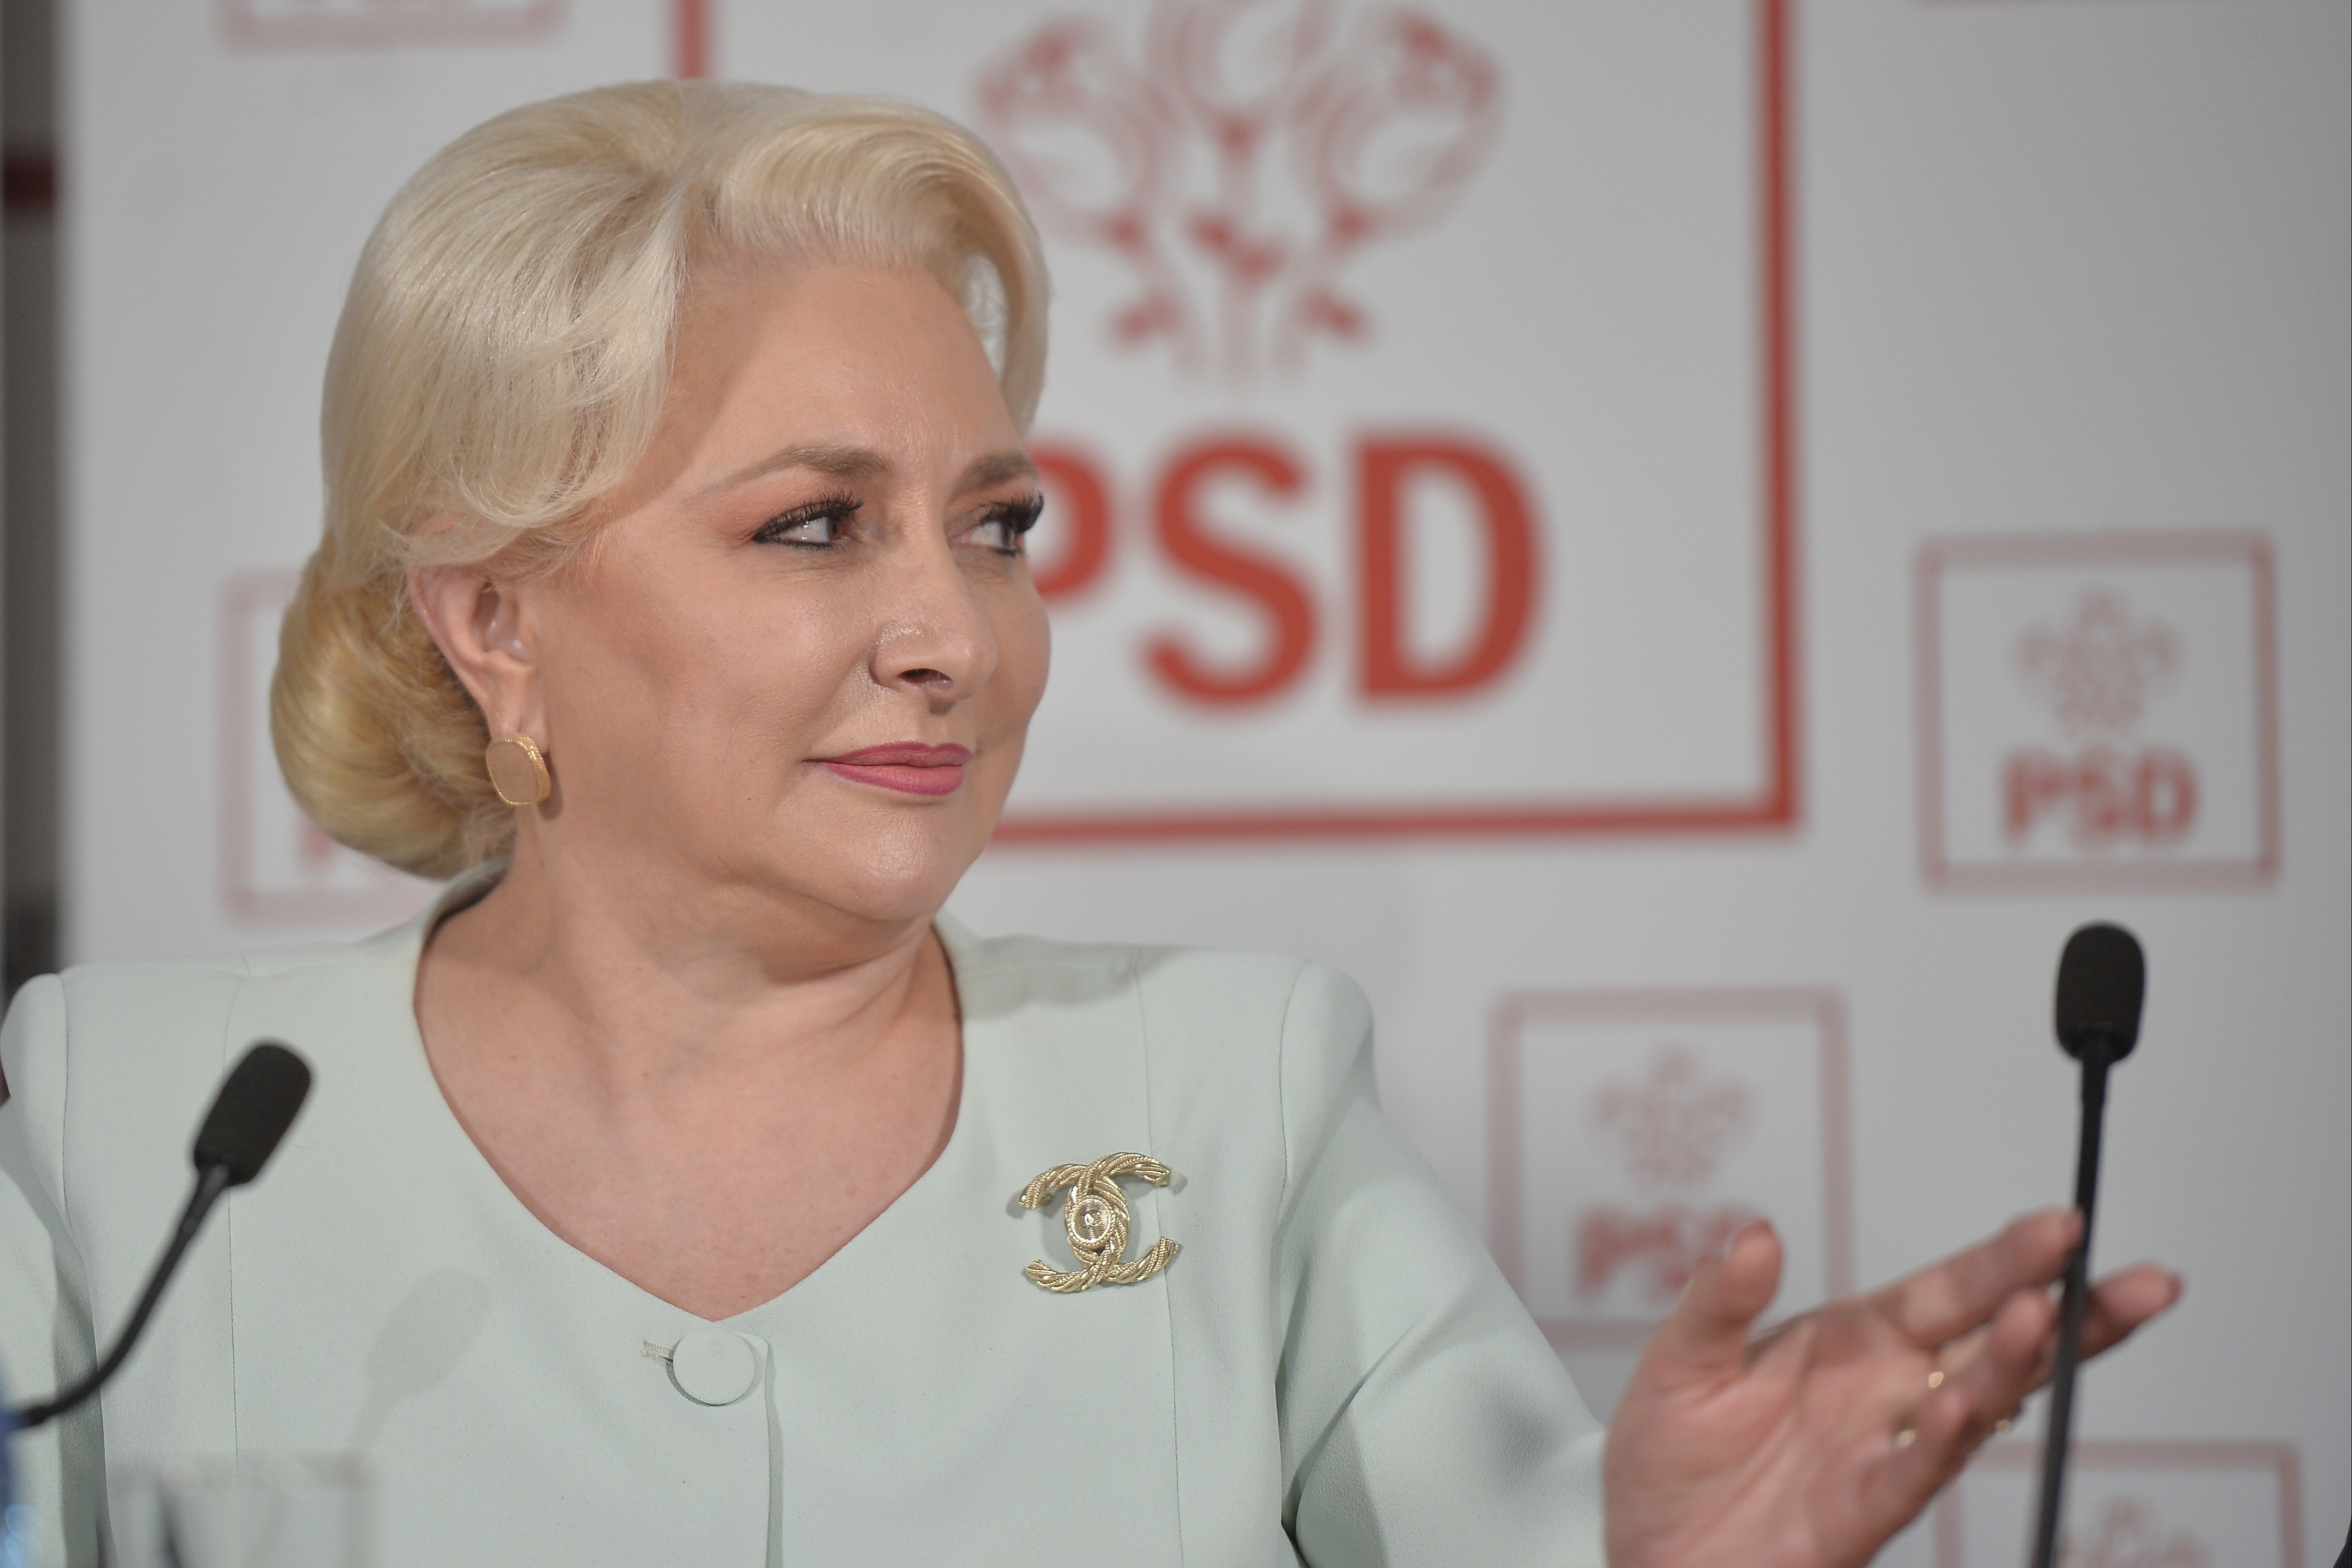 Viorica Dăncilă anunţă că PSD nu va semna pactul propus de Klaus Iohannis: Nu avem de ce să semnăm acest pact